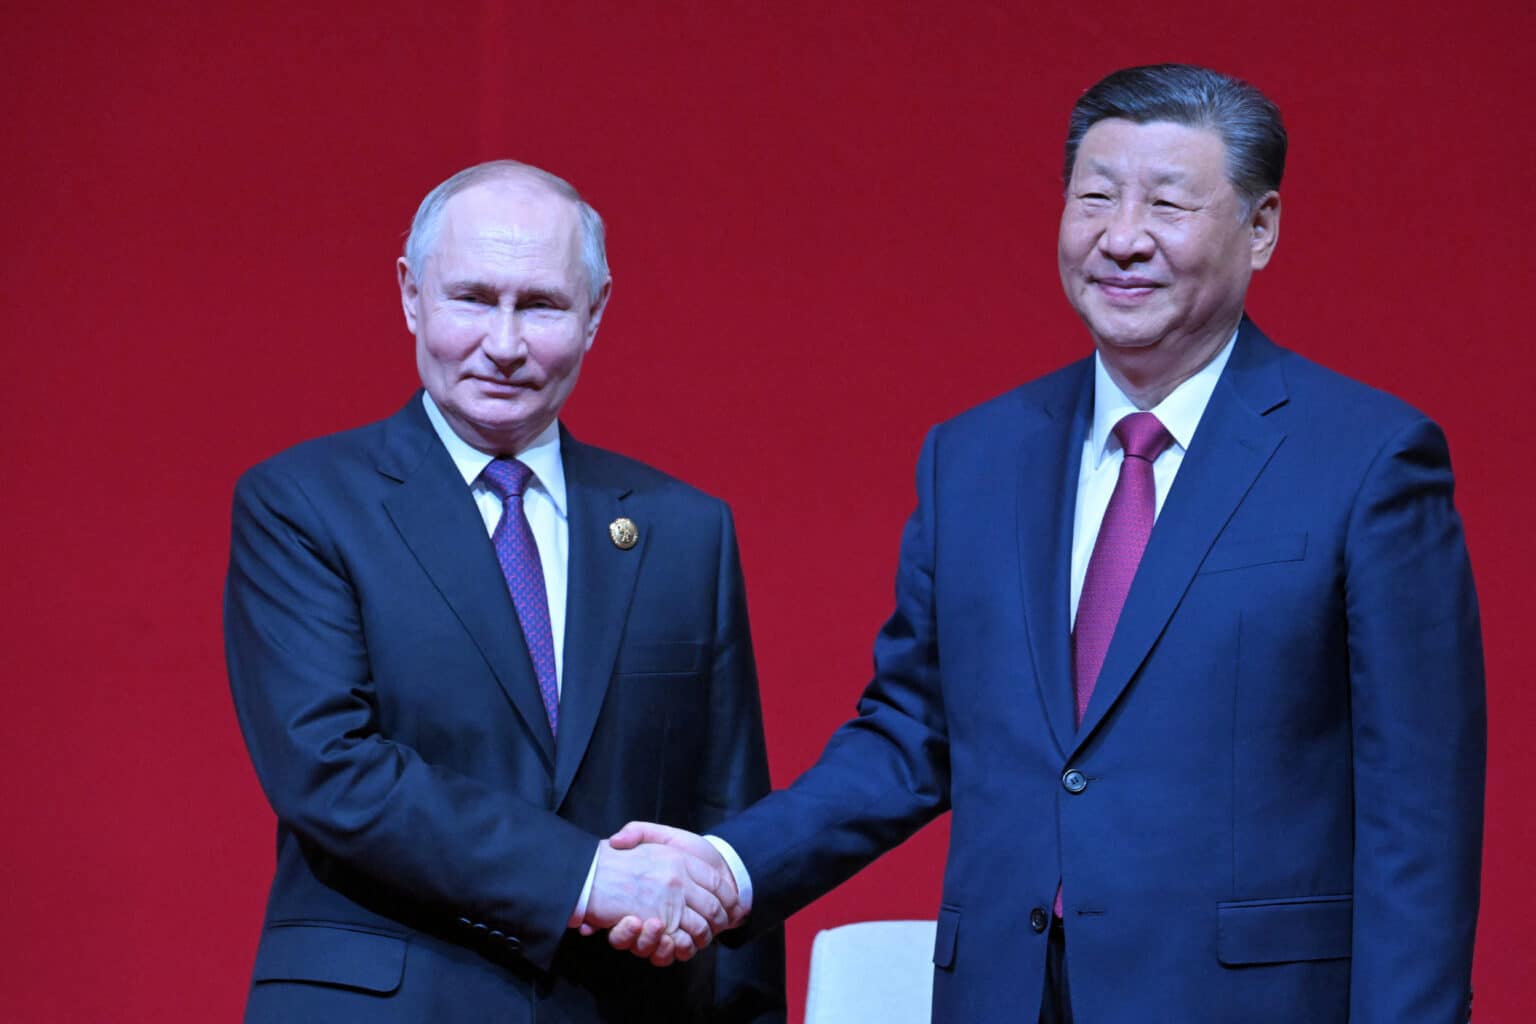 פוטין נפגש עם נשיא סין: "שיתוף הפעולה בינינו שומר על היציבות העולמית"